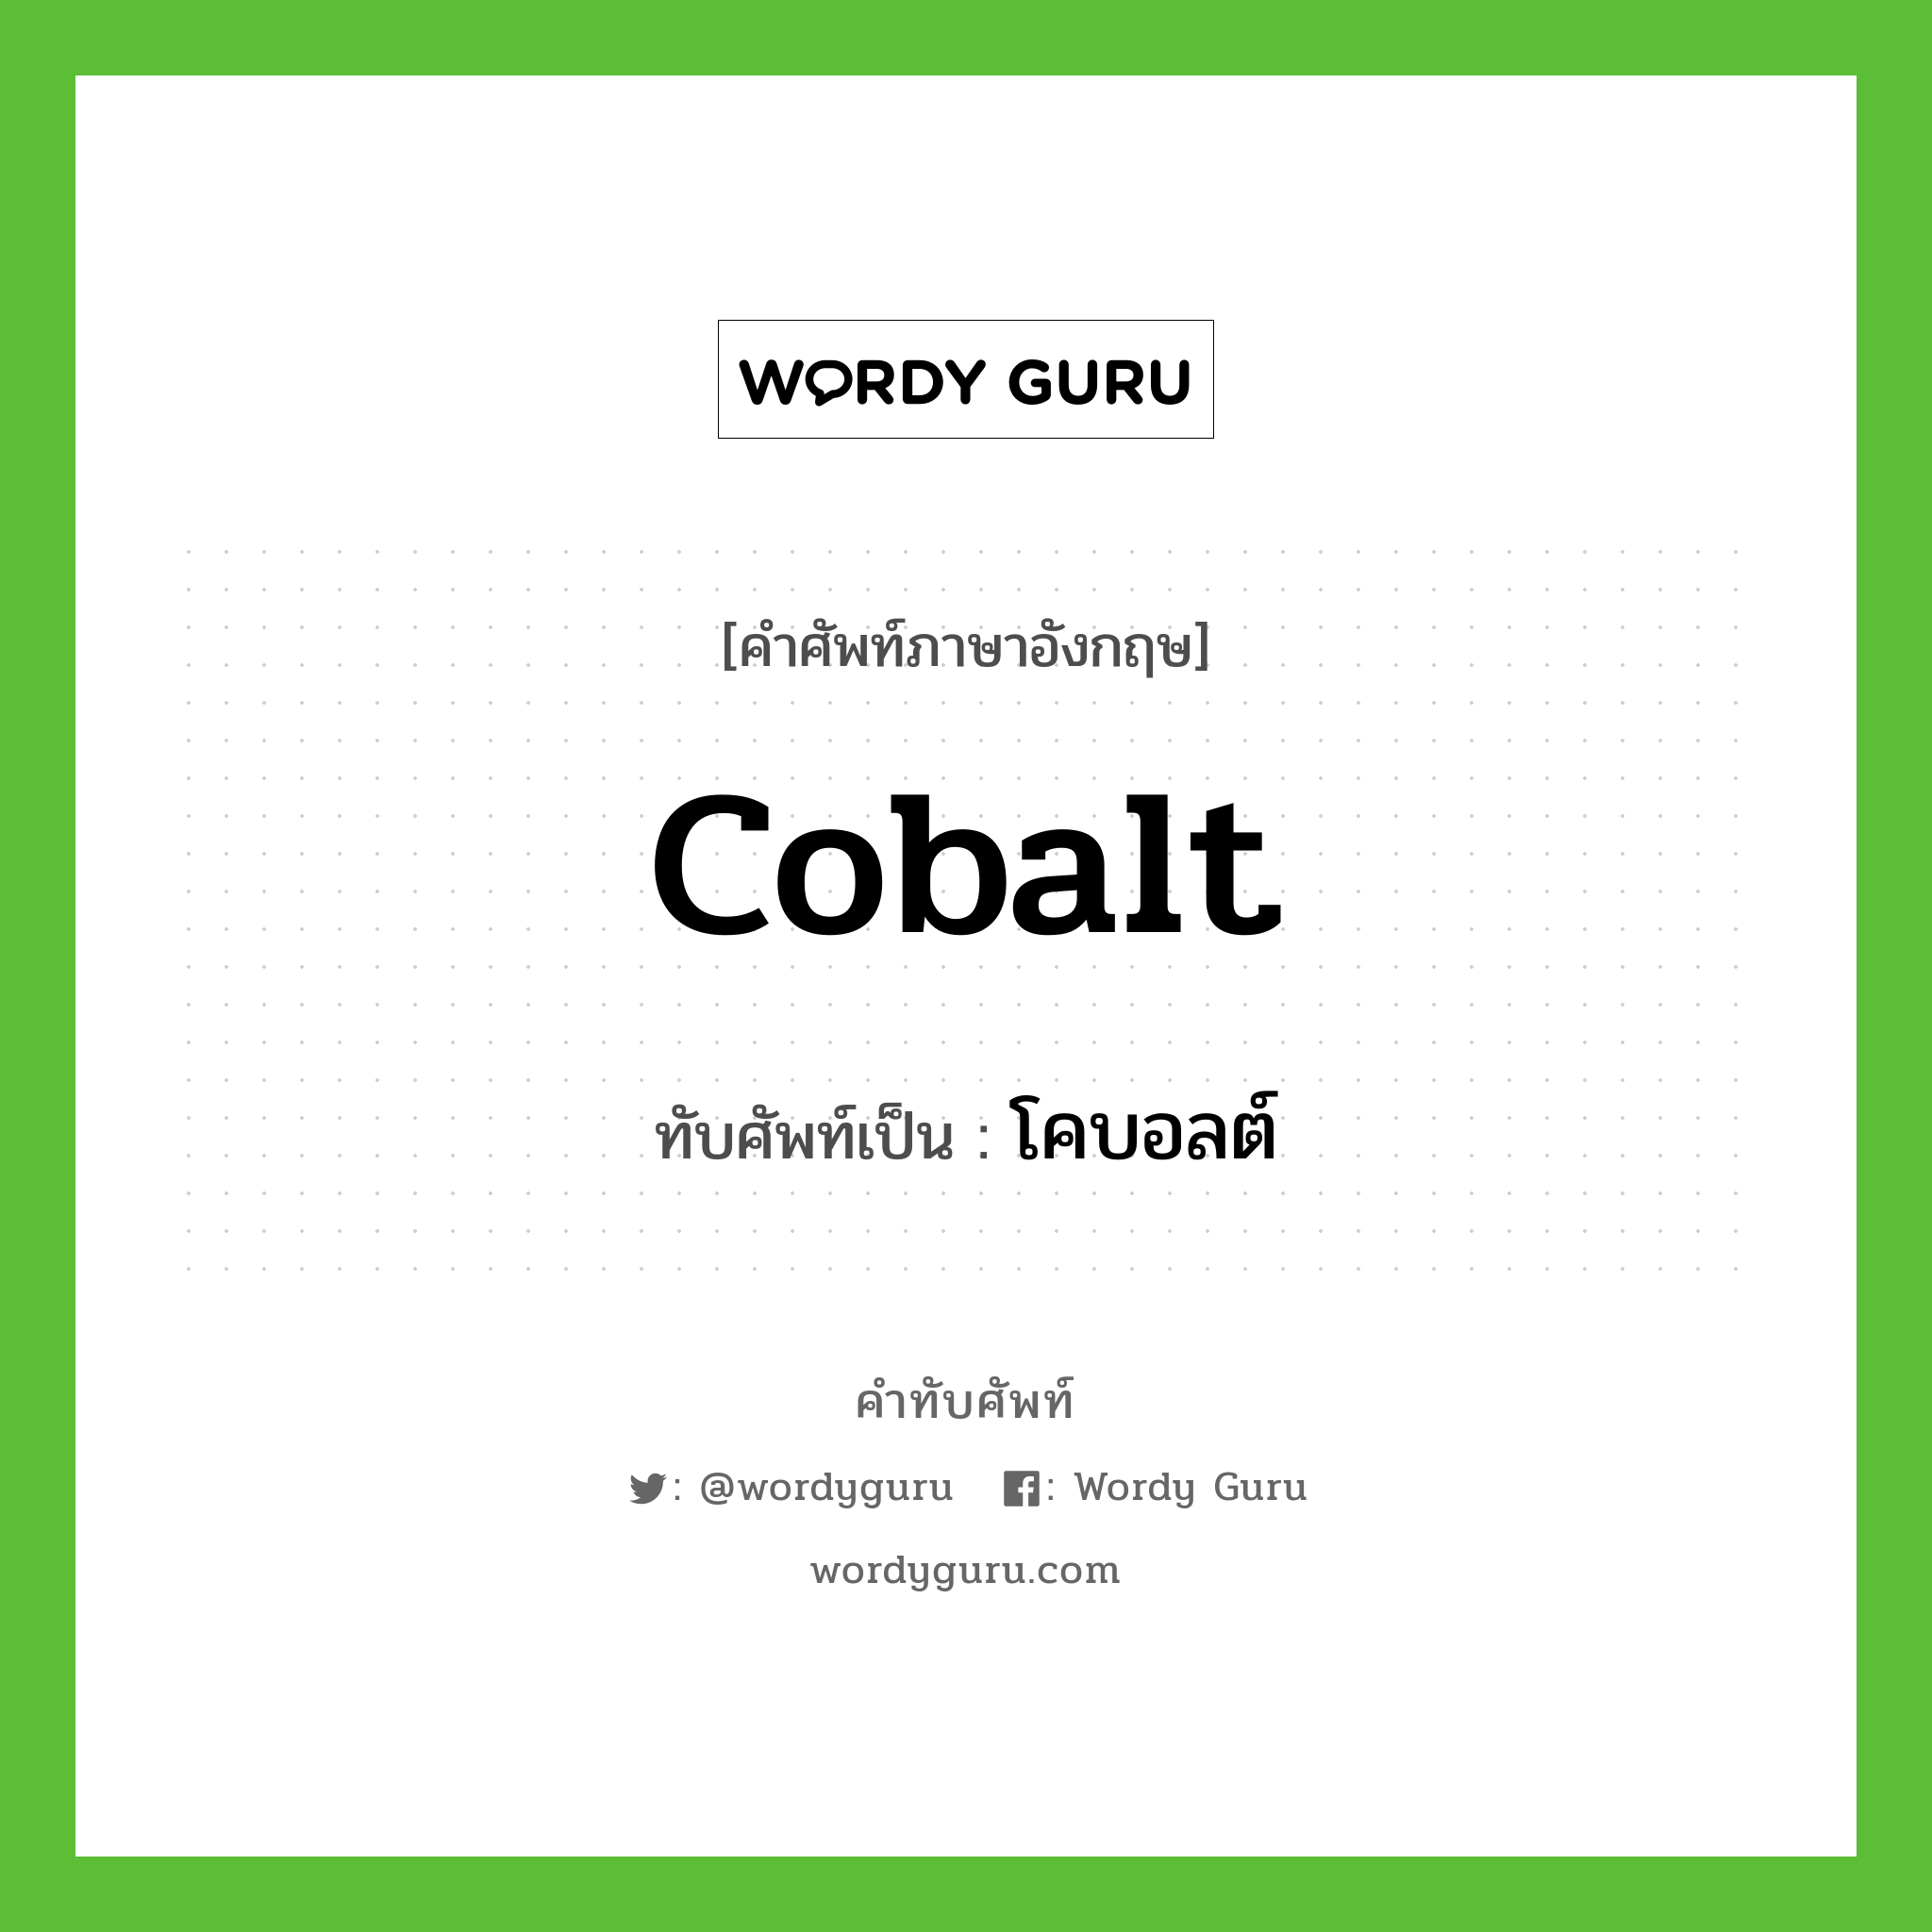 cobalt เขียนเป็นคำไทยว่าอะไร?, คำศัพท์ภาษาอังกฤษ cobalt ทับศัพท์เป็น โคบอลต์